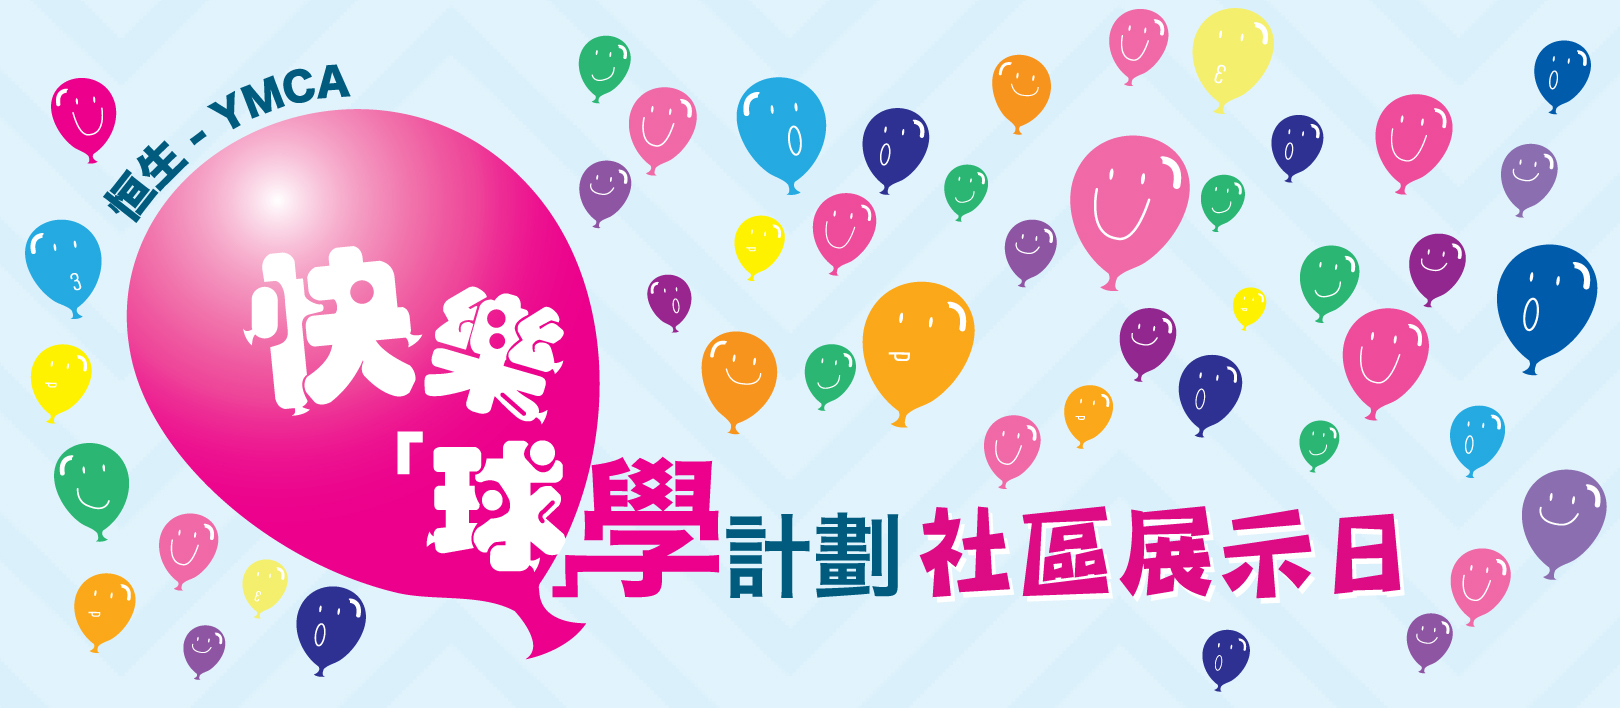 「恒生 - YMCA快樂『球』學計劃」7月7日社區展示日